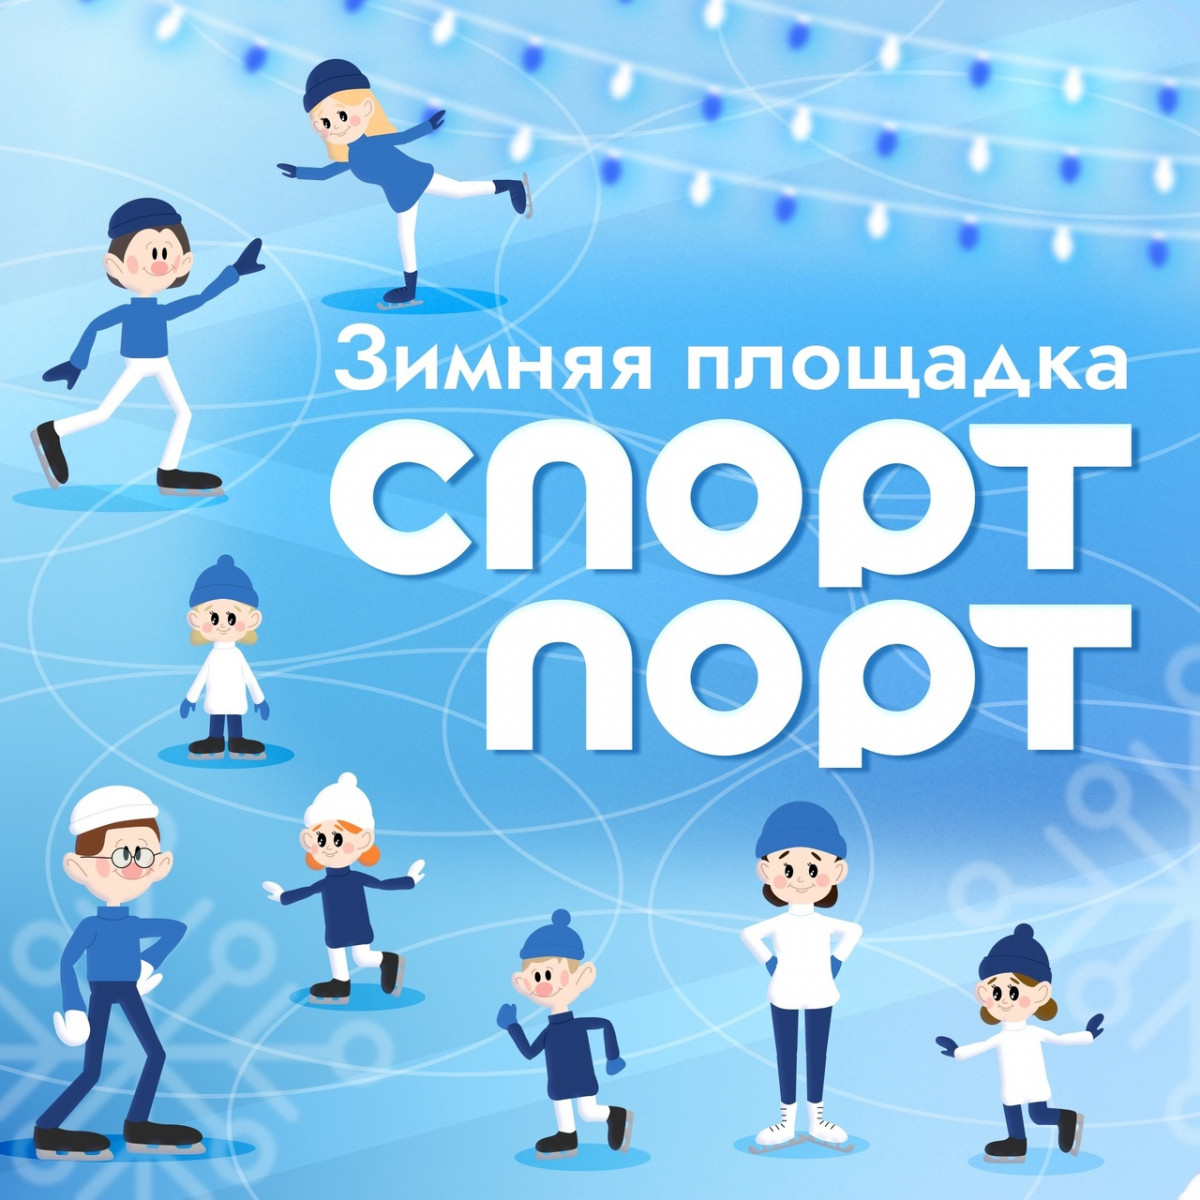 Площадка «Спорт Порт» откроется на стадионе «Нижний Новгород» 26 декабря